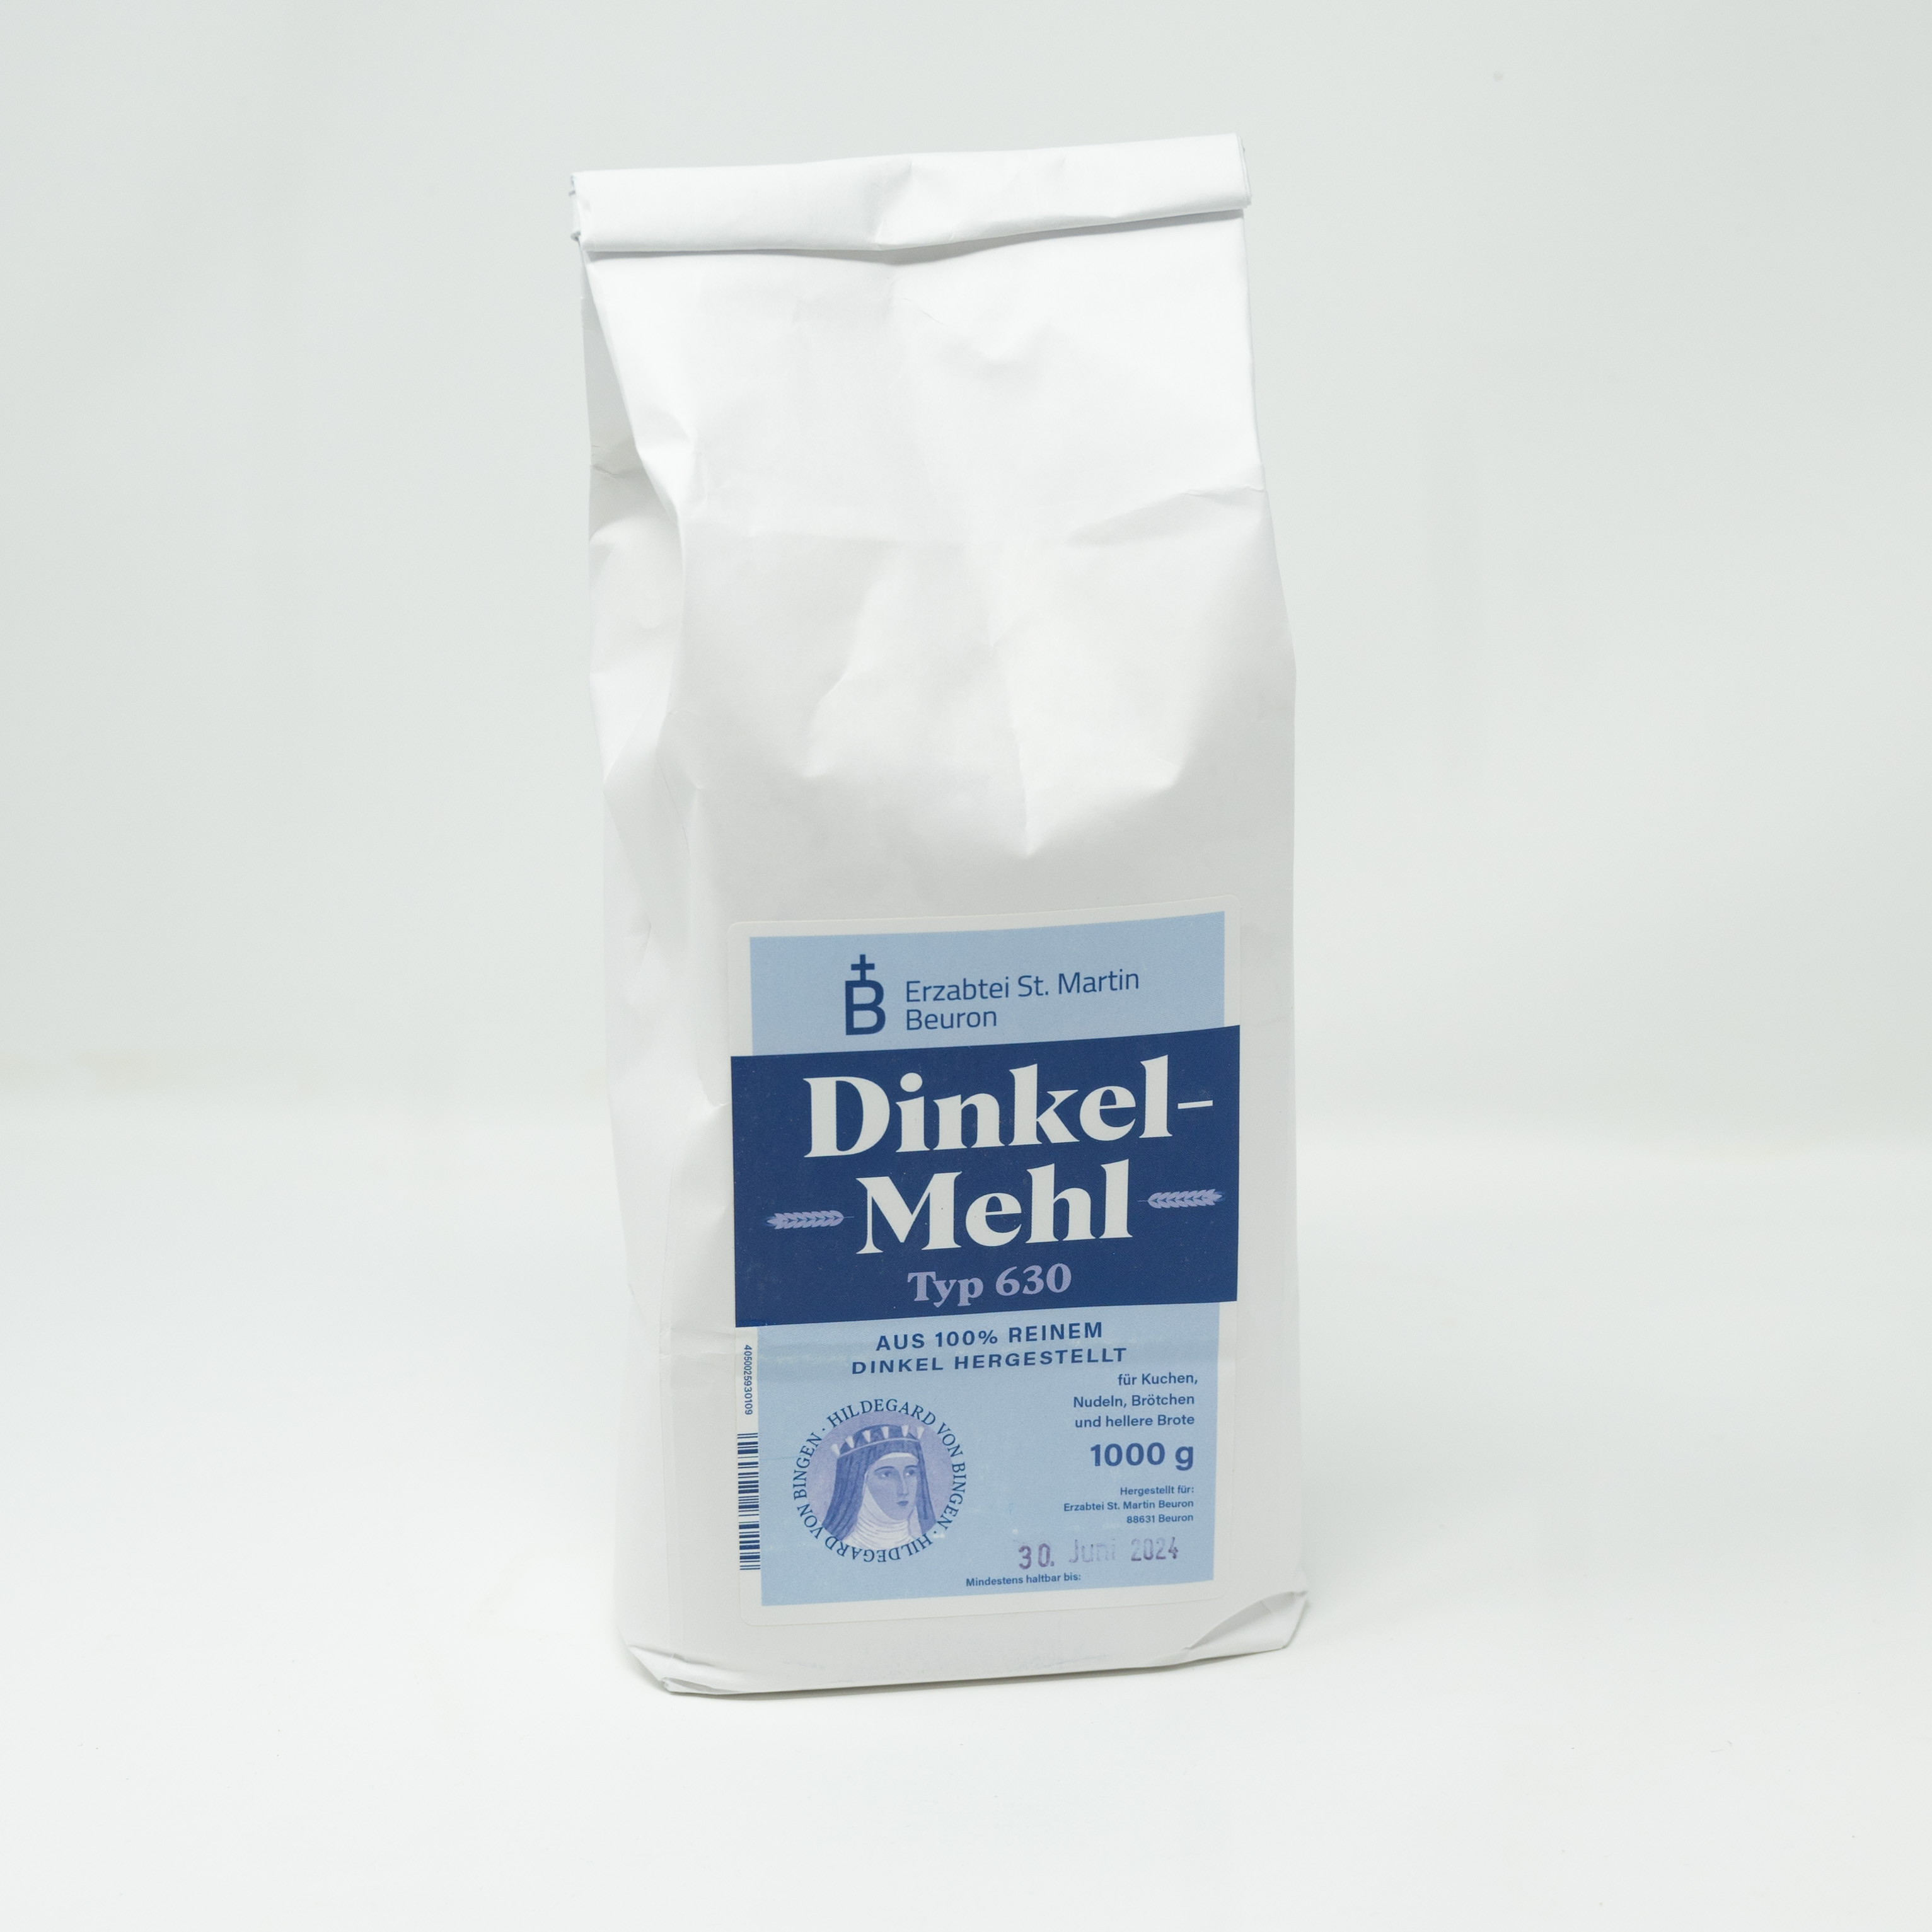 Dinkel-Mehl